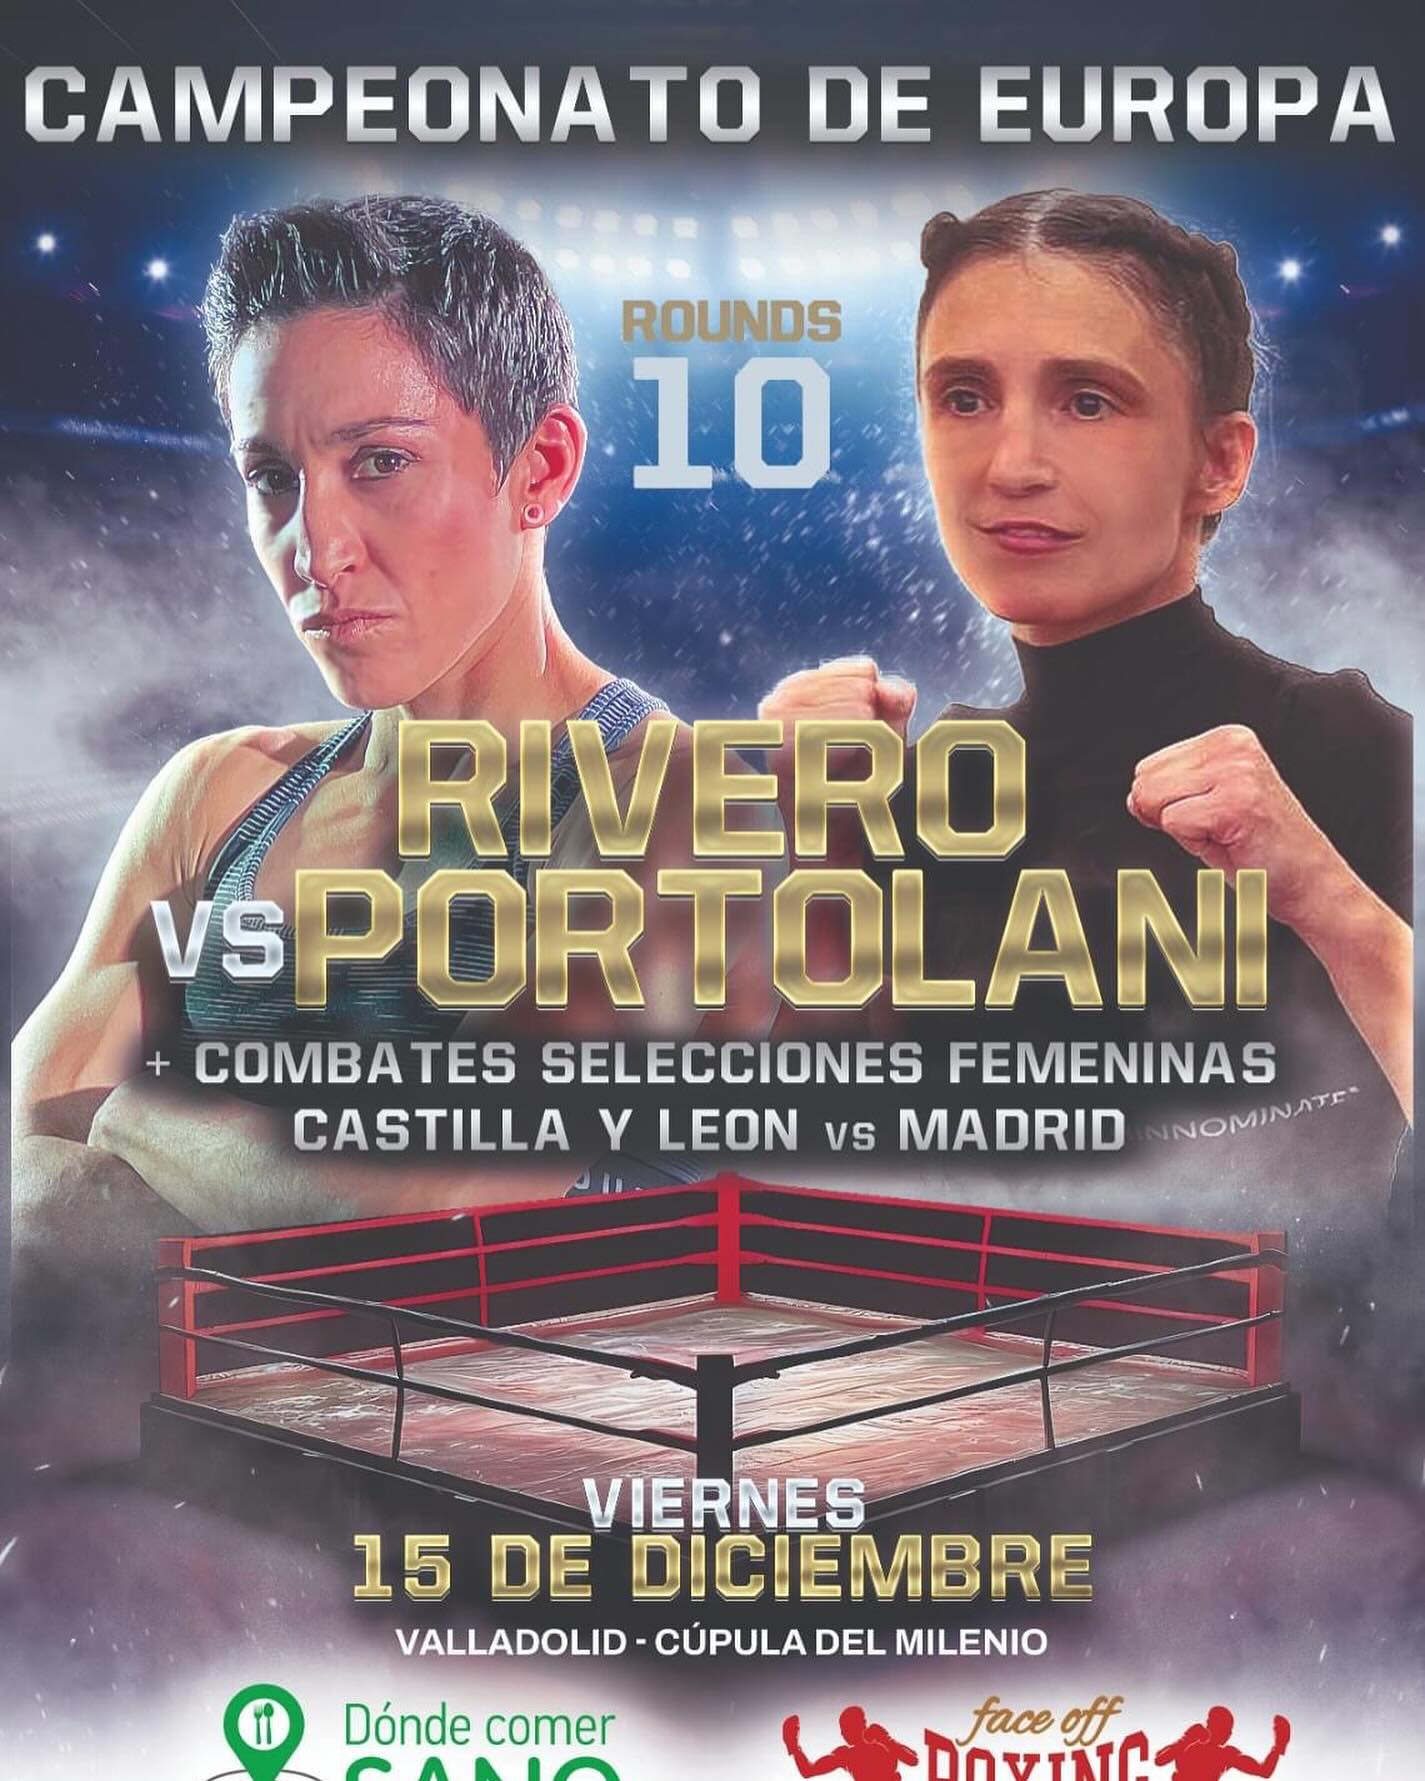 Il 15 dicembre a Valladolid la Portolani vs la Rivero per il Titolo Europeo Pesi Paglia